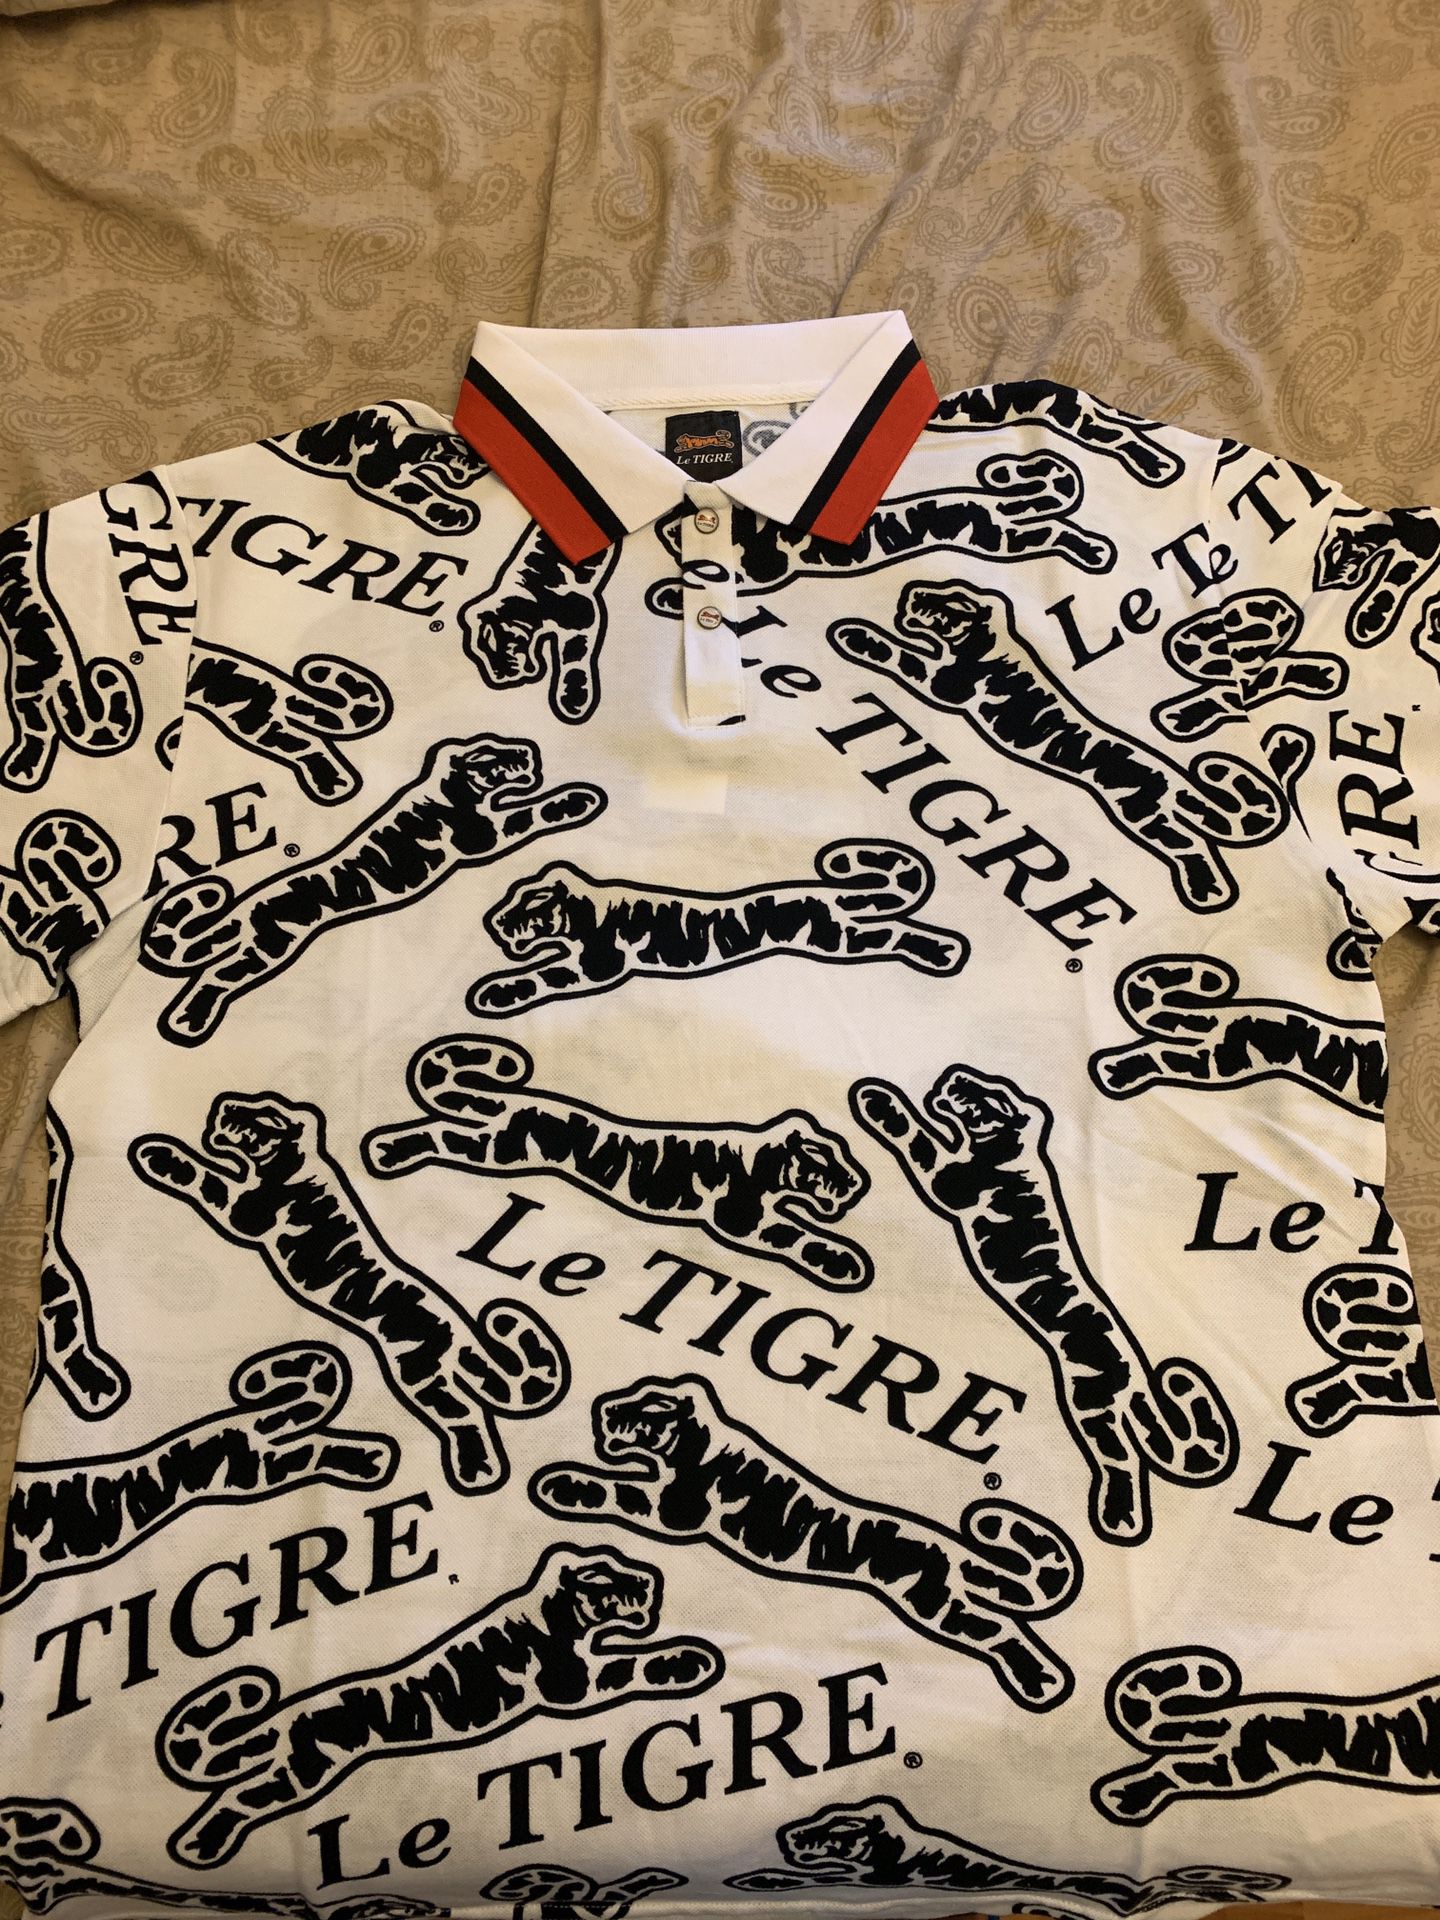 Le Tigre shirt brand new